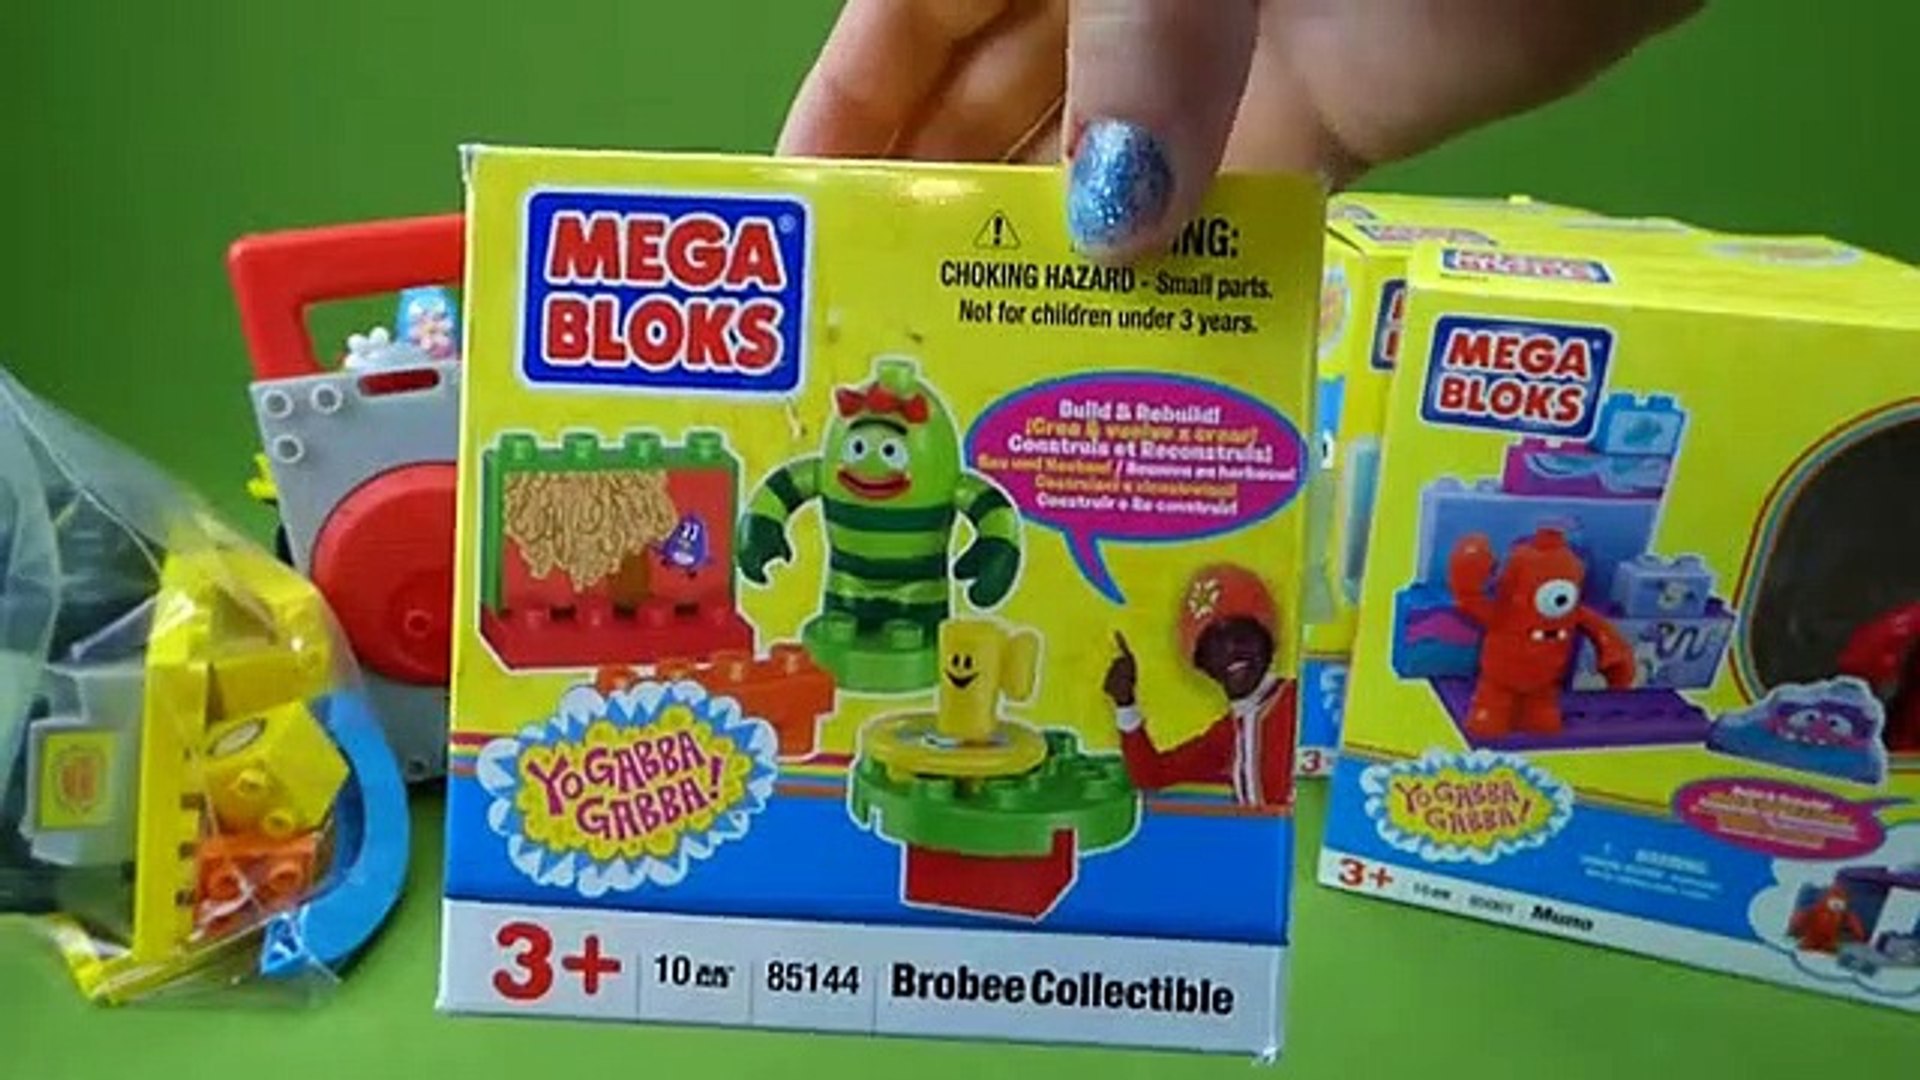 Yo gabba gabba mega bloks  Childhood toys, Mega bloks, Character lessons